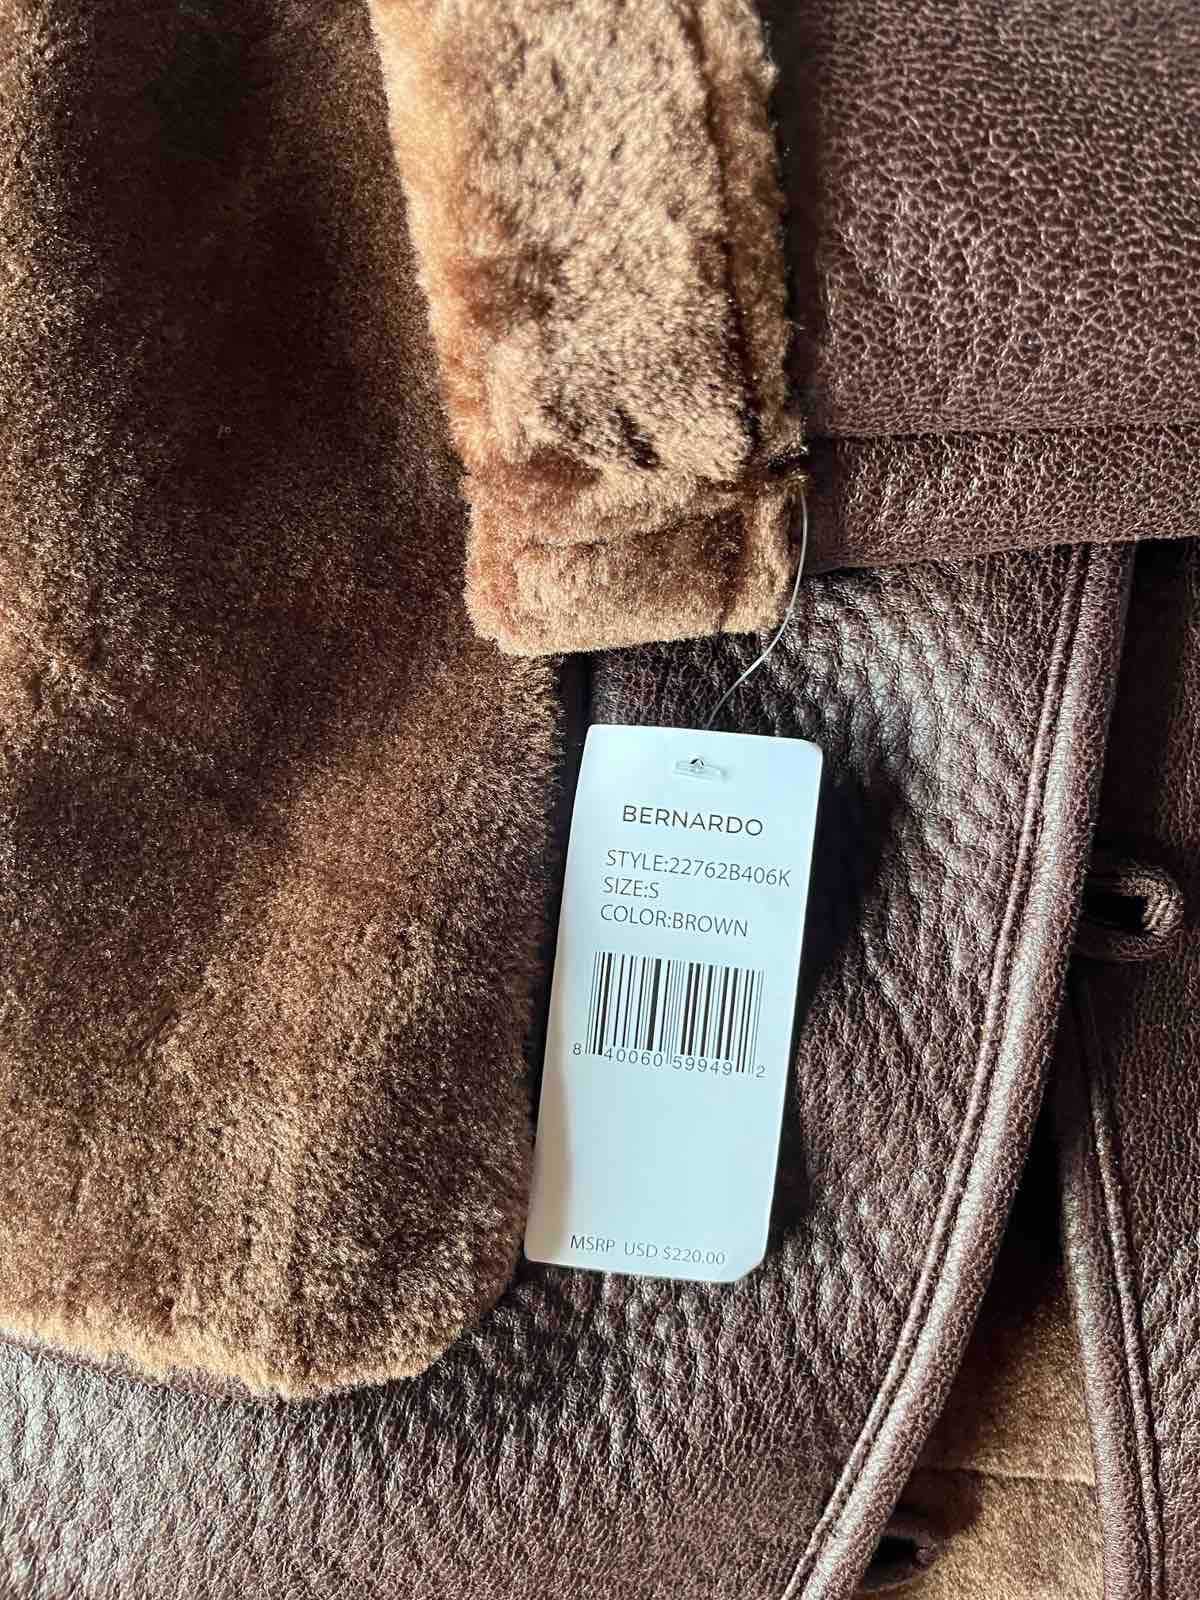 Bernardo късо палто/яке размер S, ново с етикети